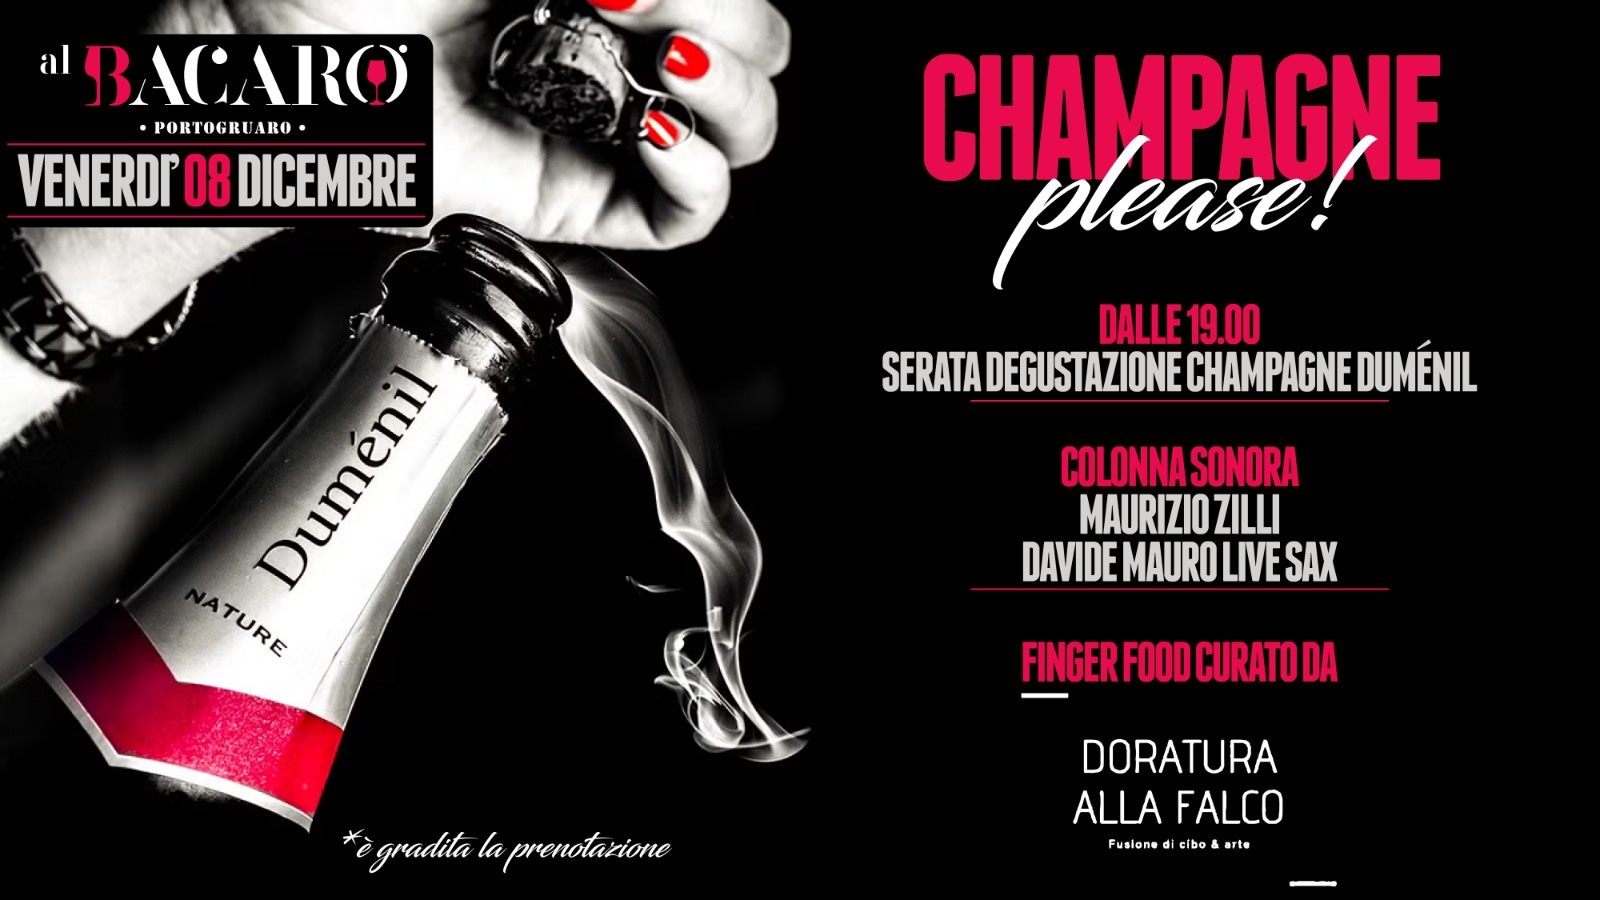 Venerdì 8 Dicembre_ Champagne please ! Serata Dumenil al Bacaro - EventiFVG.it